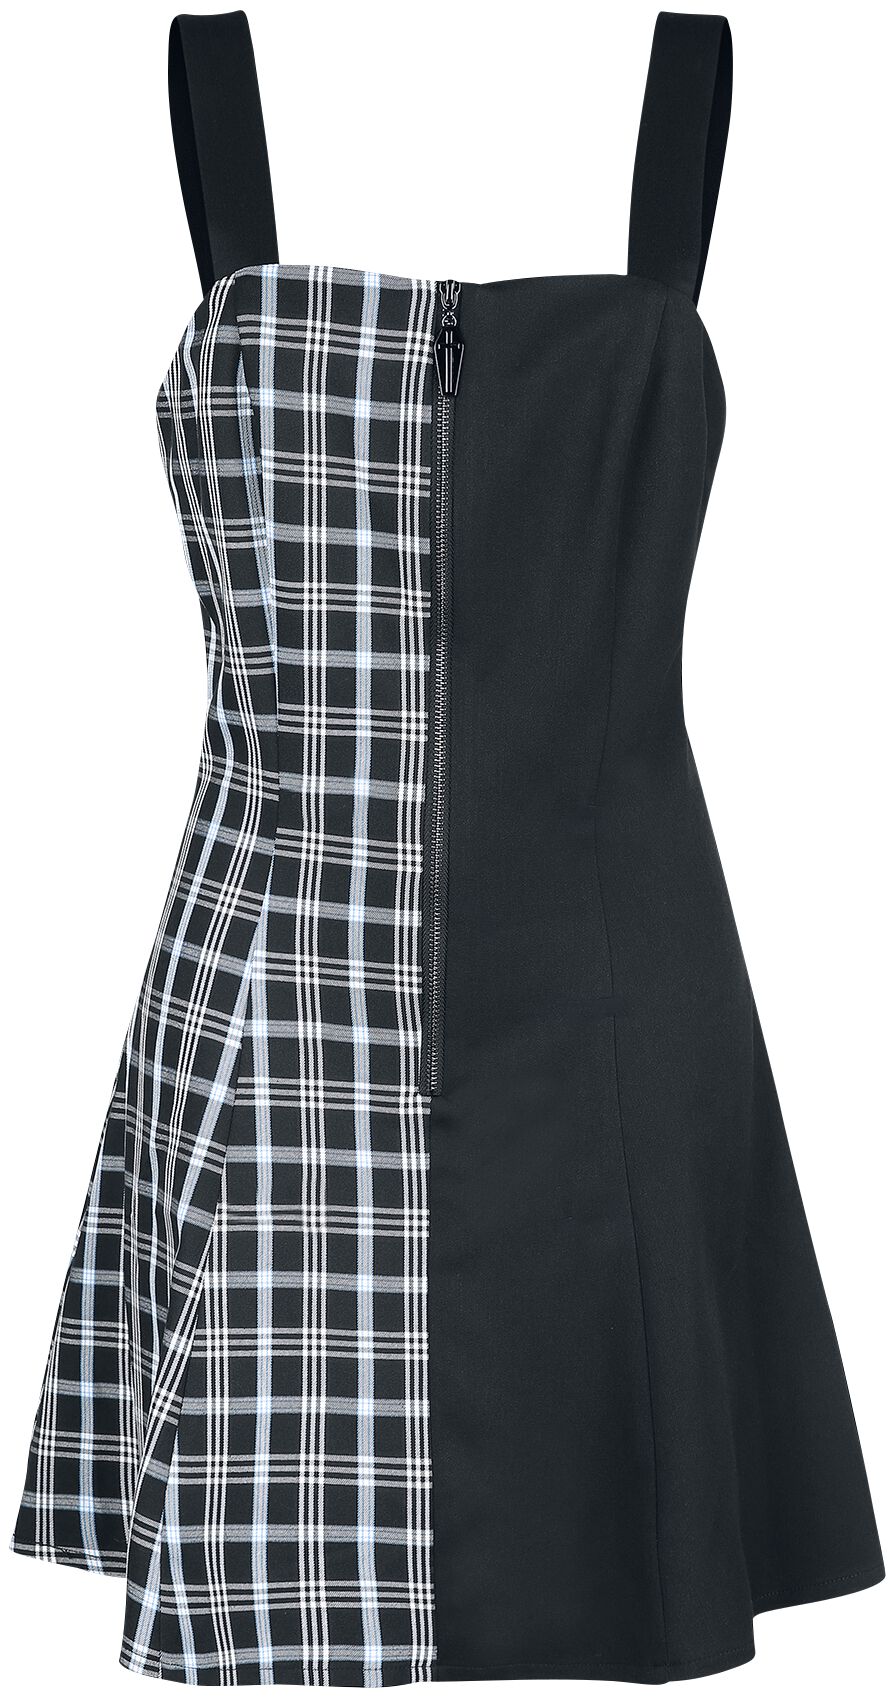 Banned Alternative - Gothic Kurzes Kleid - Death Check Dress - XS bis XXL - für Damen - Größe XXL - schwarz/blau